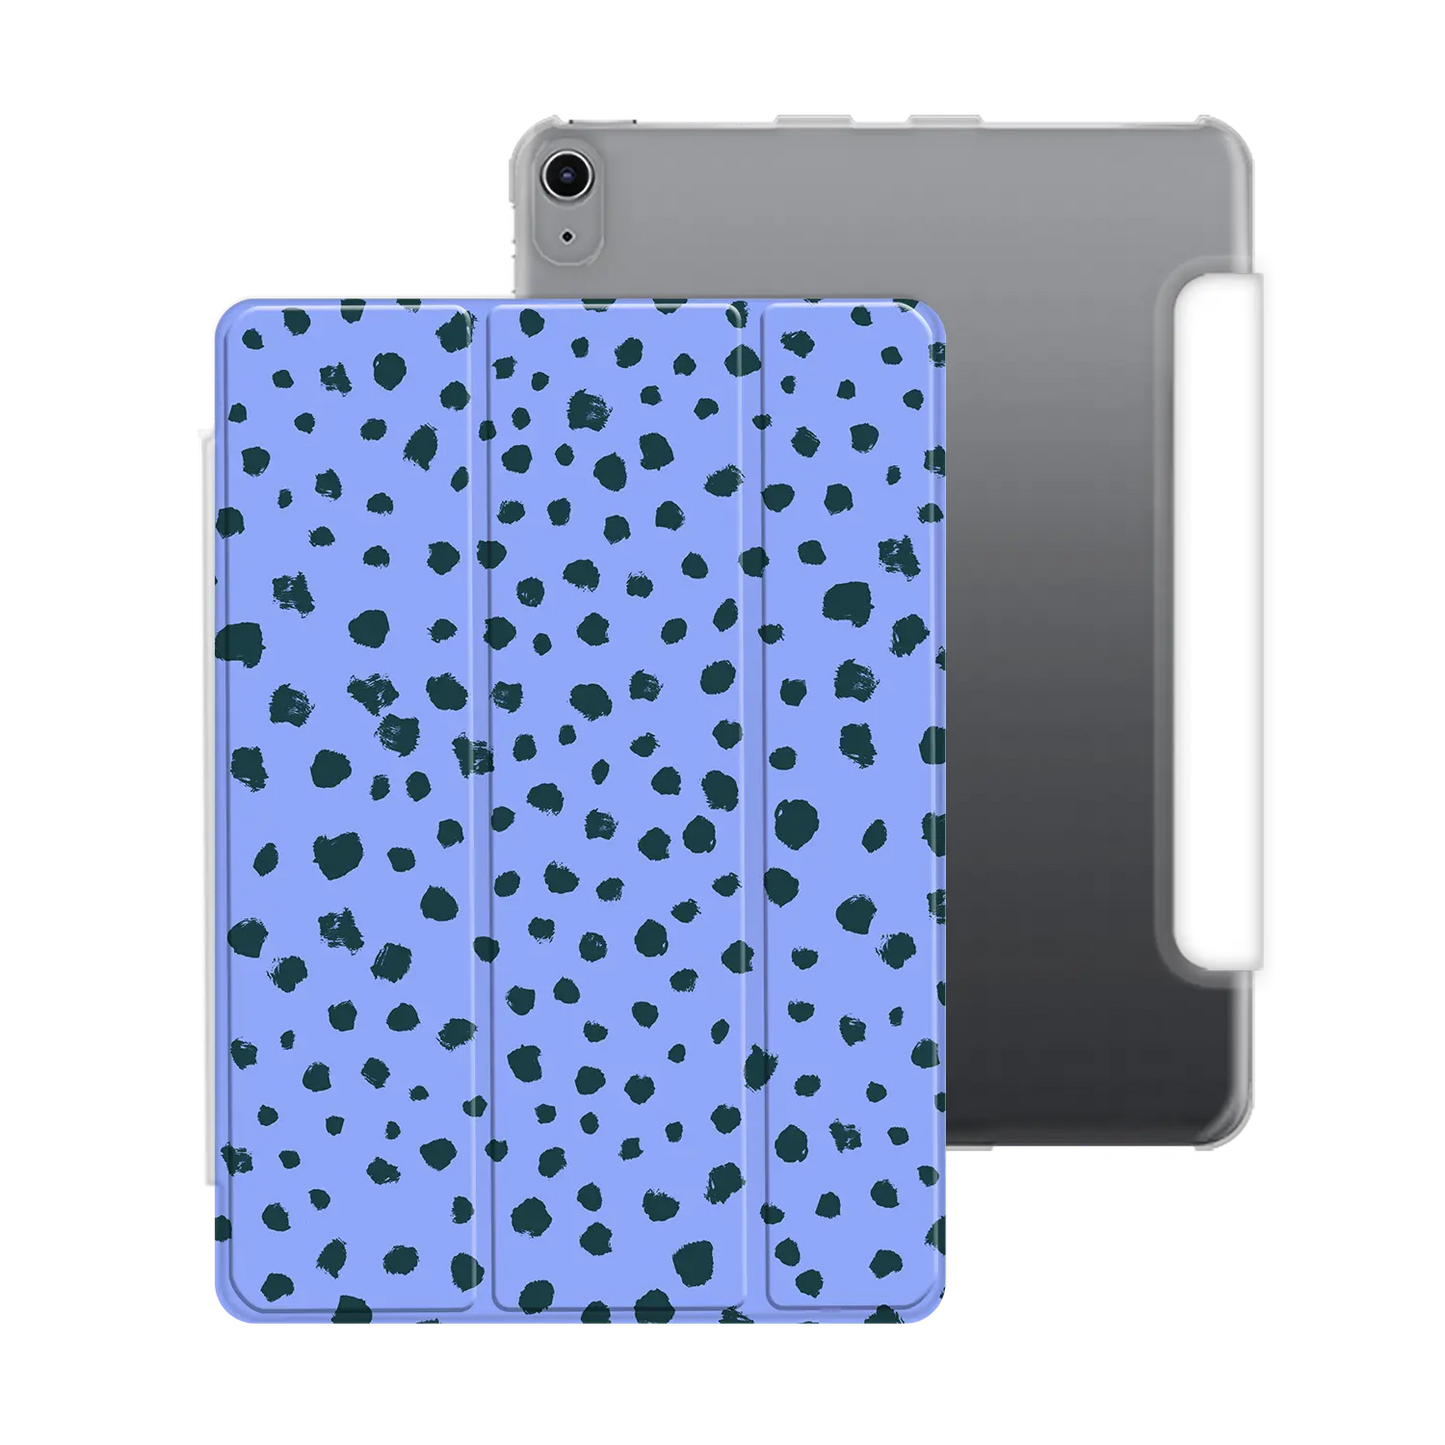 Grunge Dots - iPad personalizado carcasa